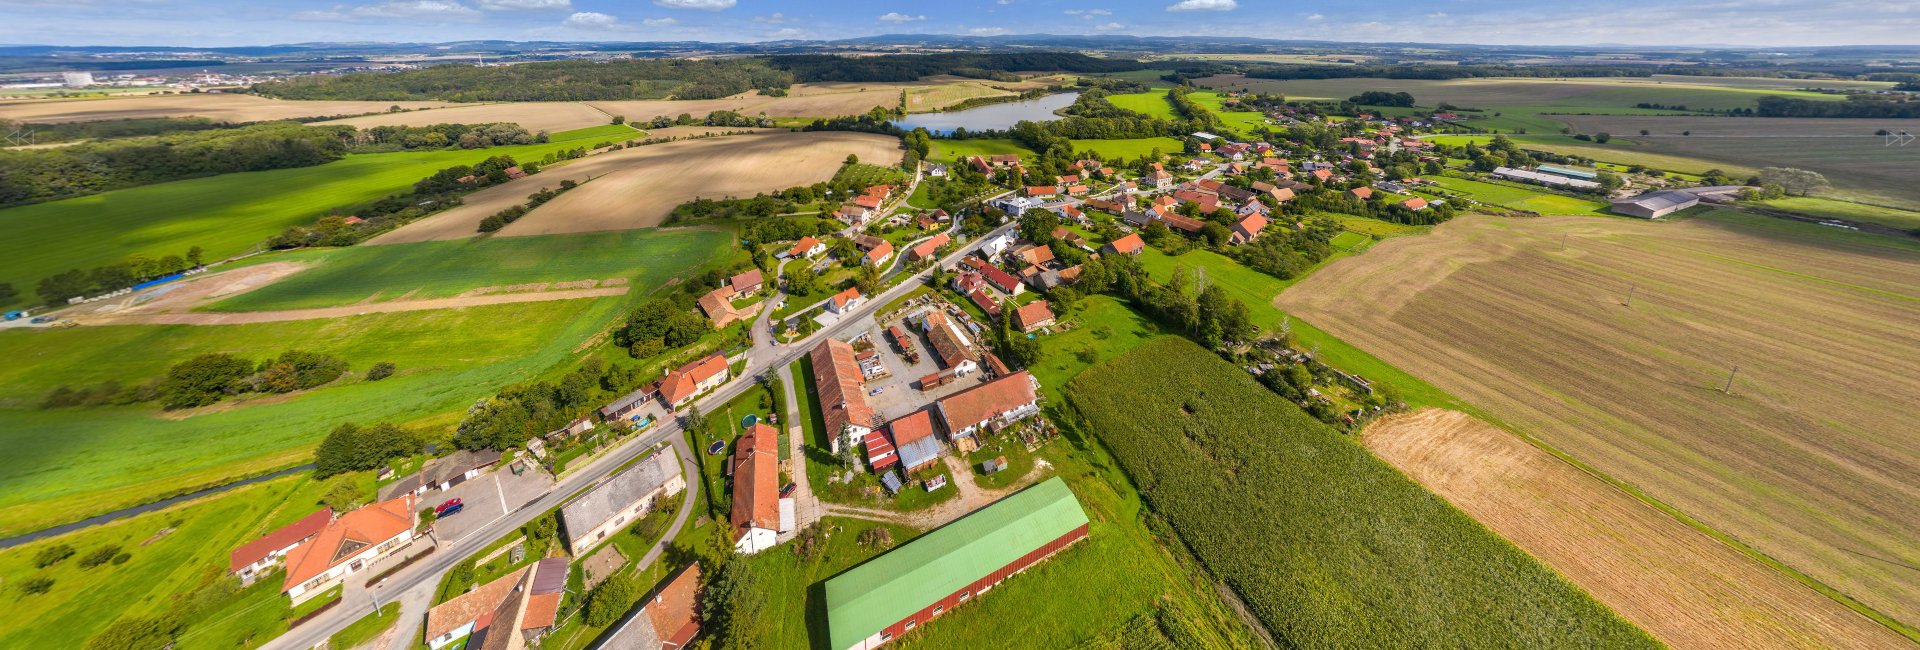 Letecký pohled na obec Semechnice